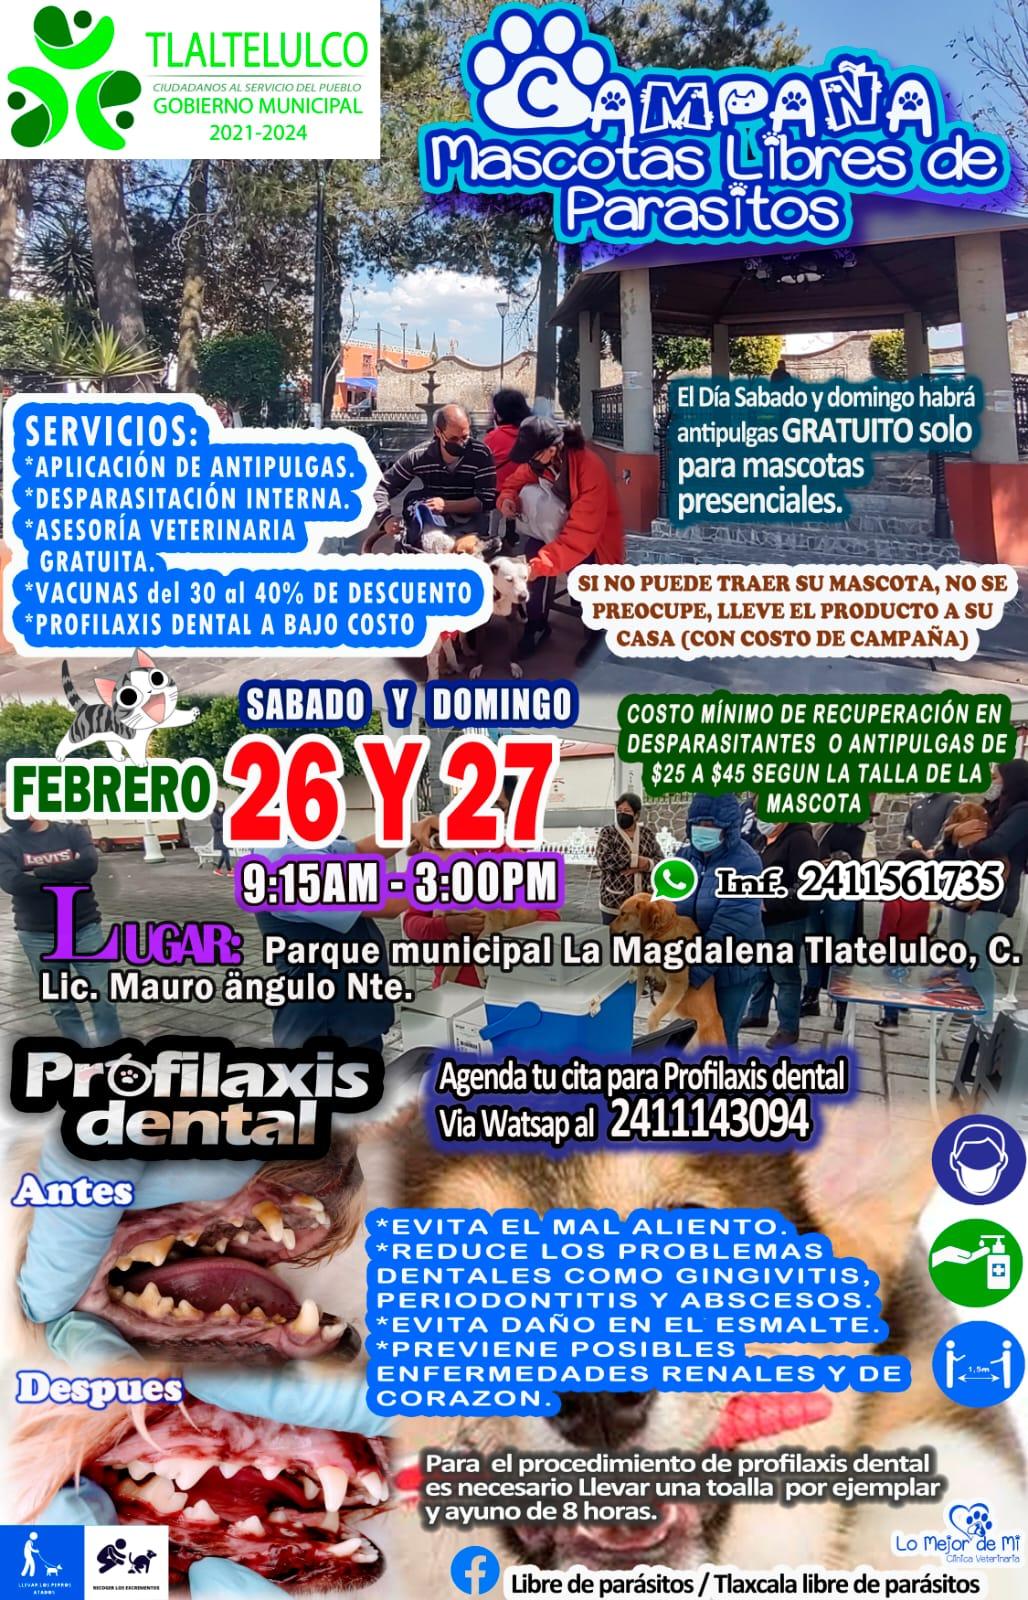 Realizarán campaña Mascotas Libres de Parásitos en Tlaltelulco